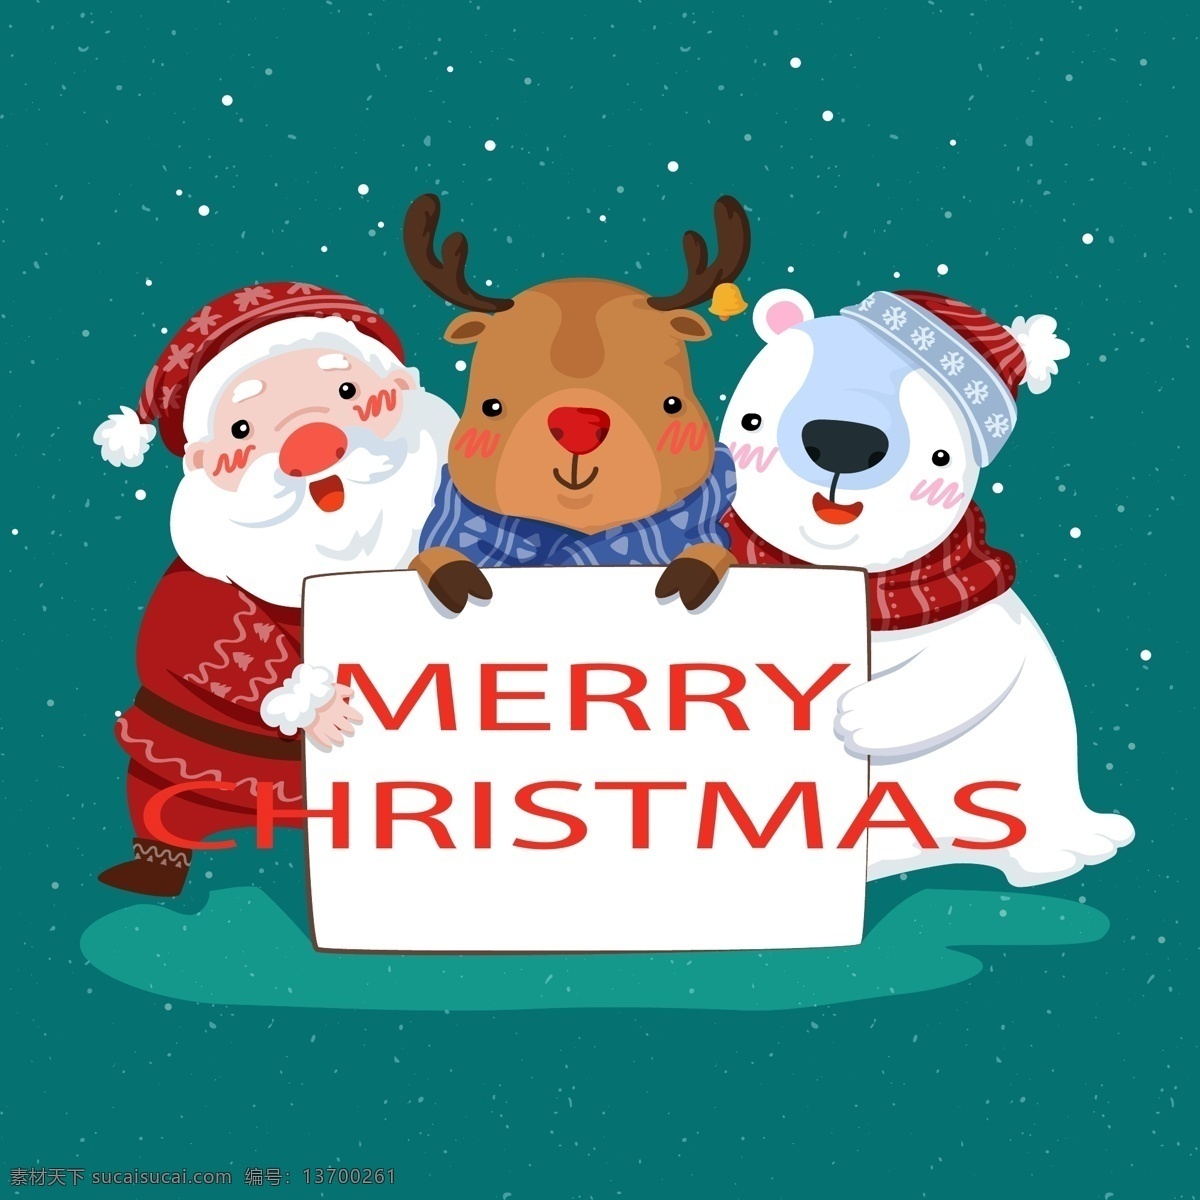 圣诞 人物角色 元素 2018 圣诞节 节日素材 免抠素材 圣诞角色 圣诞人物 圣诞素材 圣诞元素 矢量素材 雪人 驯鹿